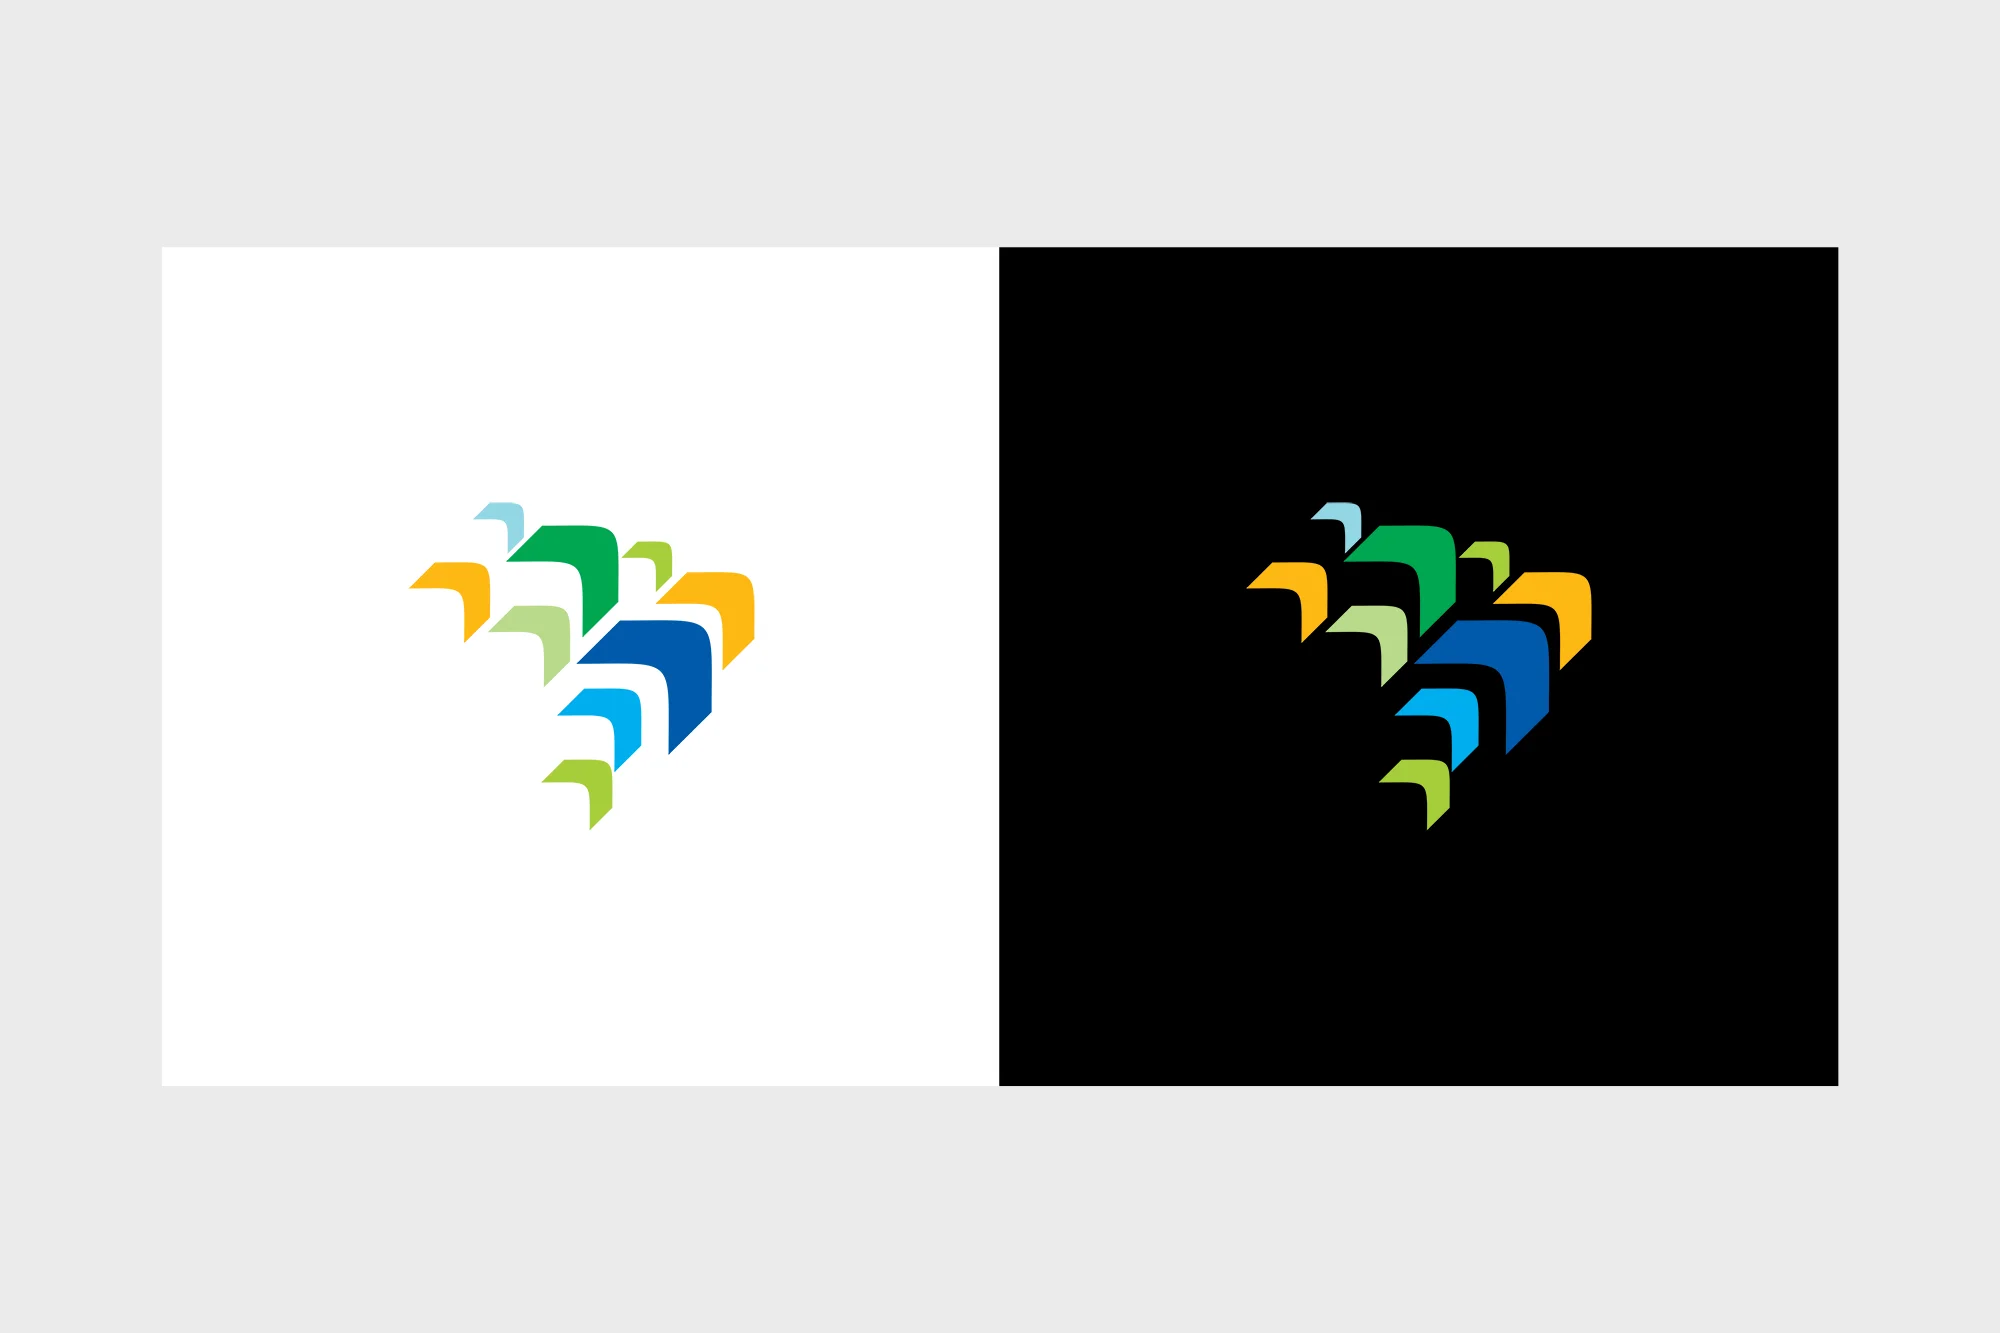 Clicktime Design e Marketing Digital - Logo PNDR